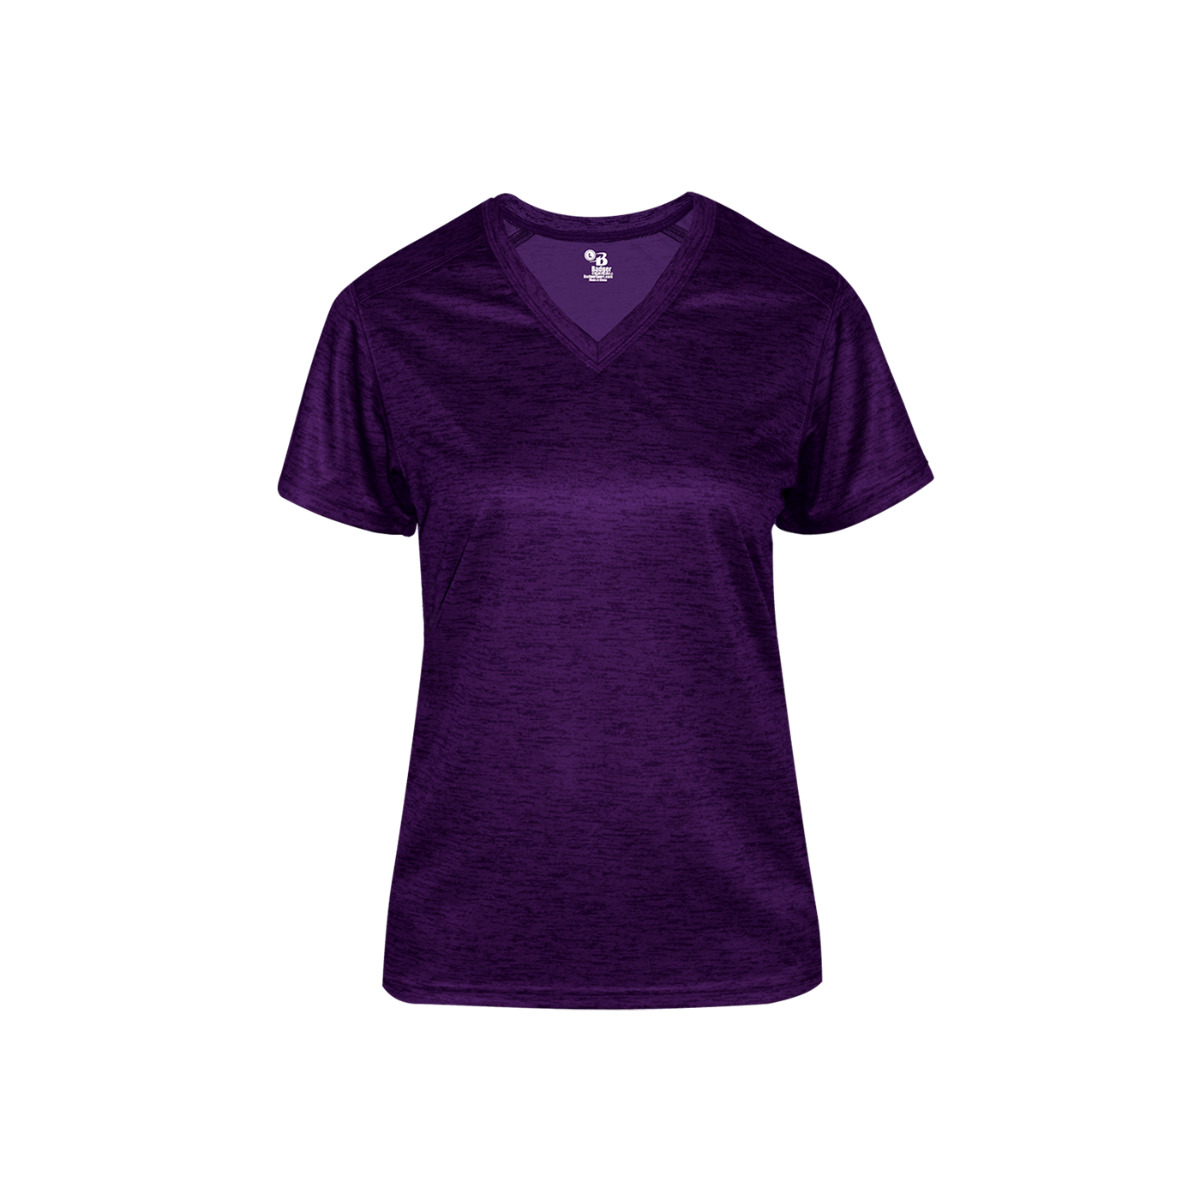 Badger Women's Tonal Blend V-neck T-shirt Purple Md